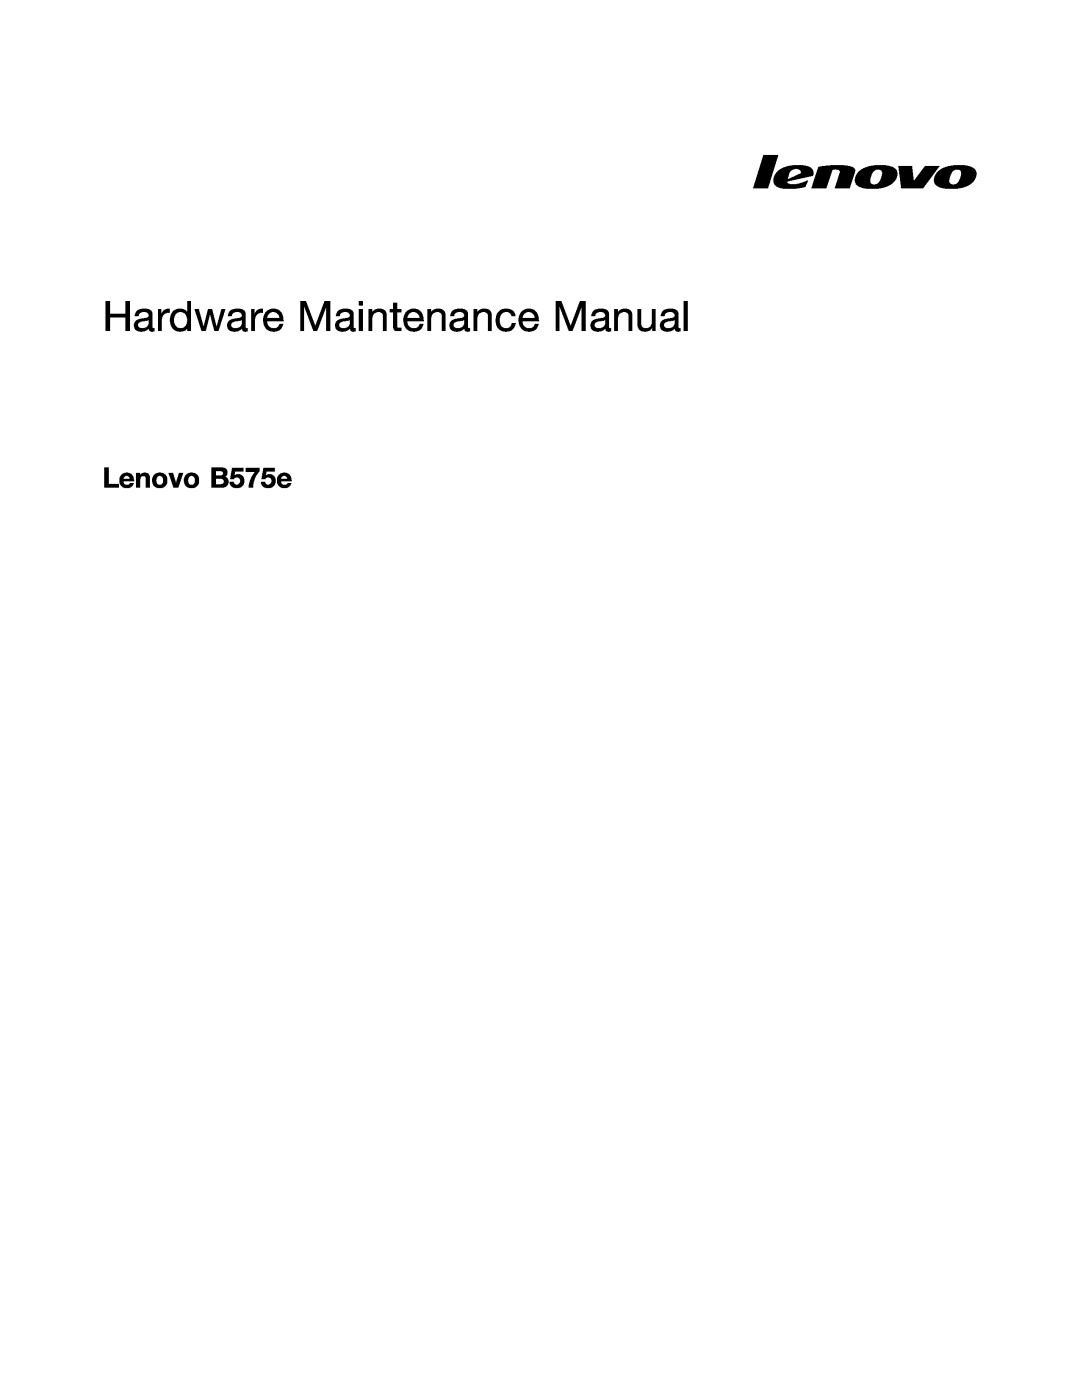 Lenovo B575E manual Lenovo B575e, Hardware Maintenance Manual 